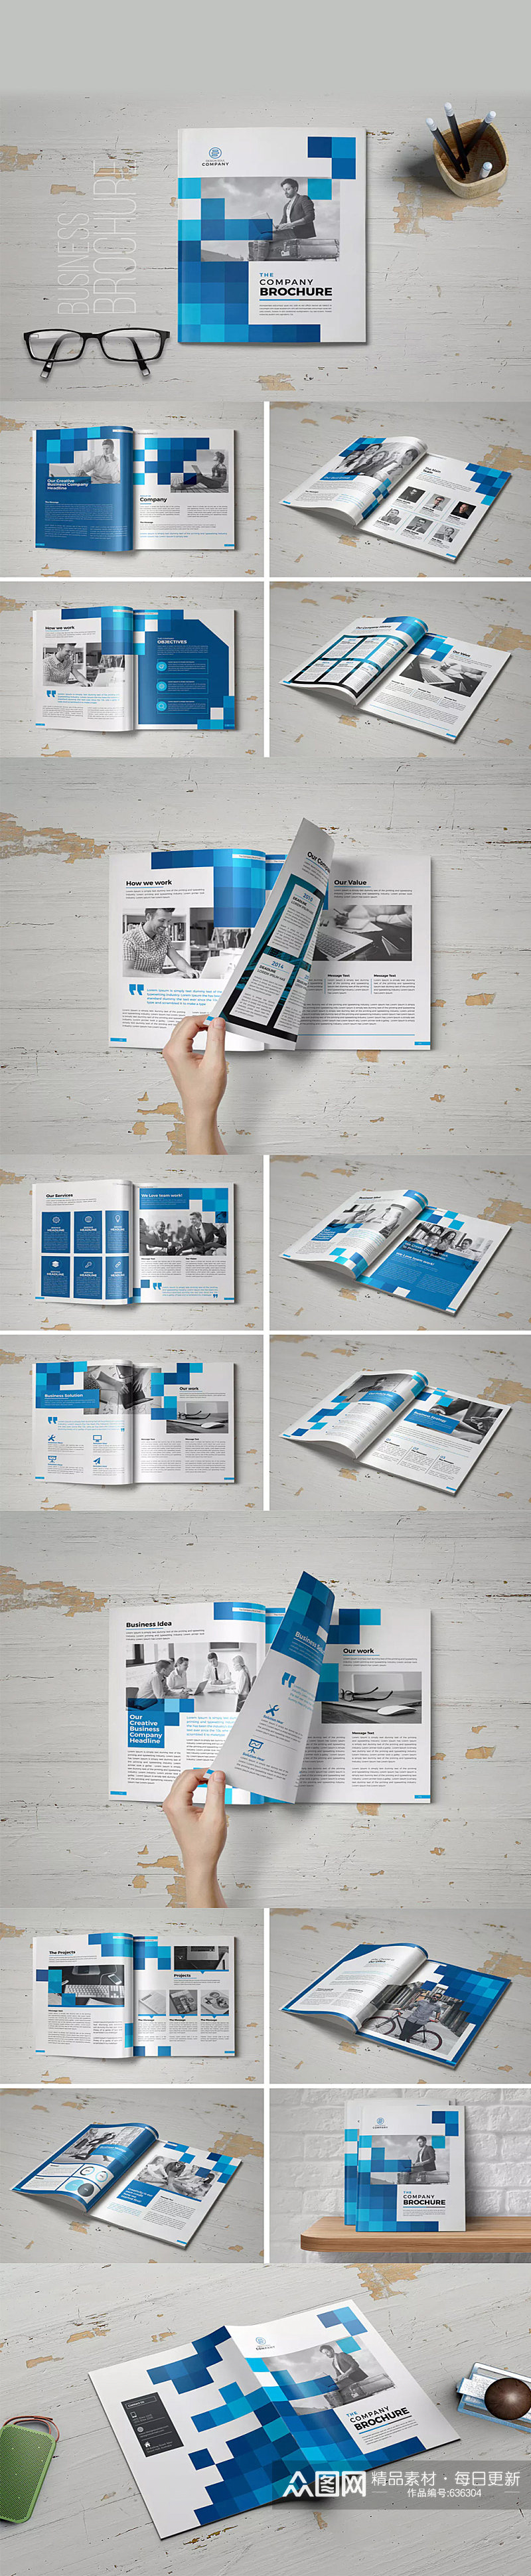 蓝色企业画册设计素材